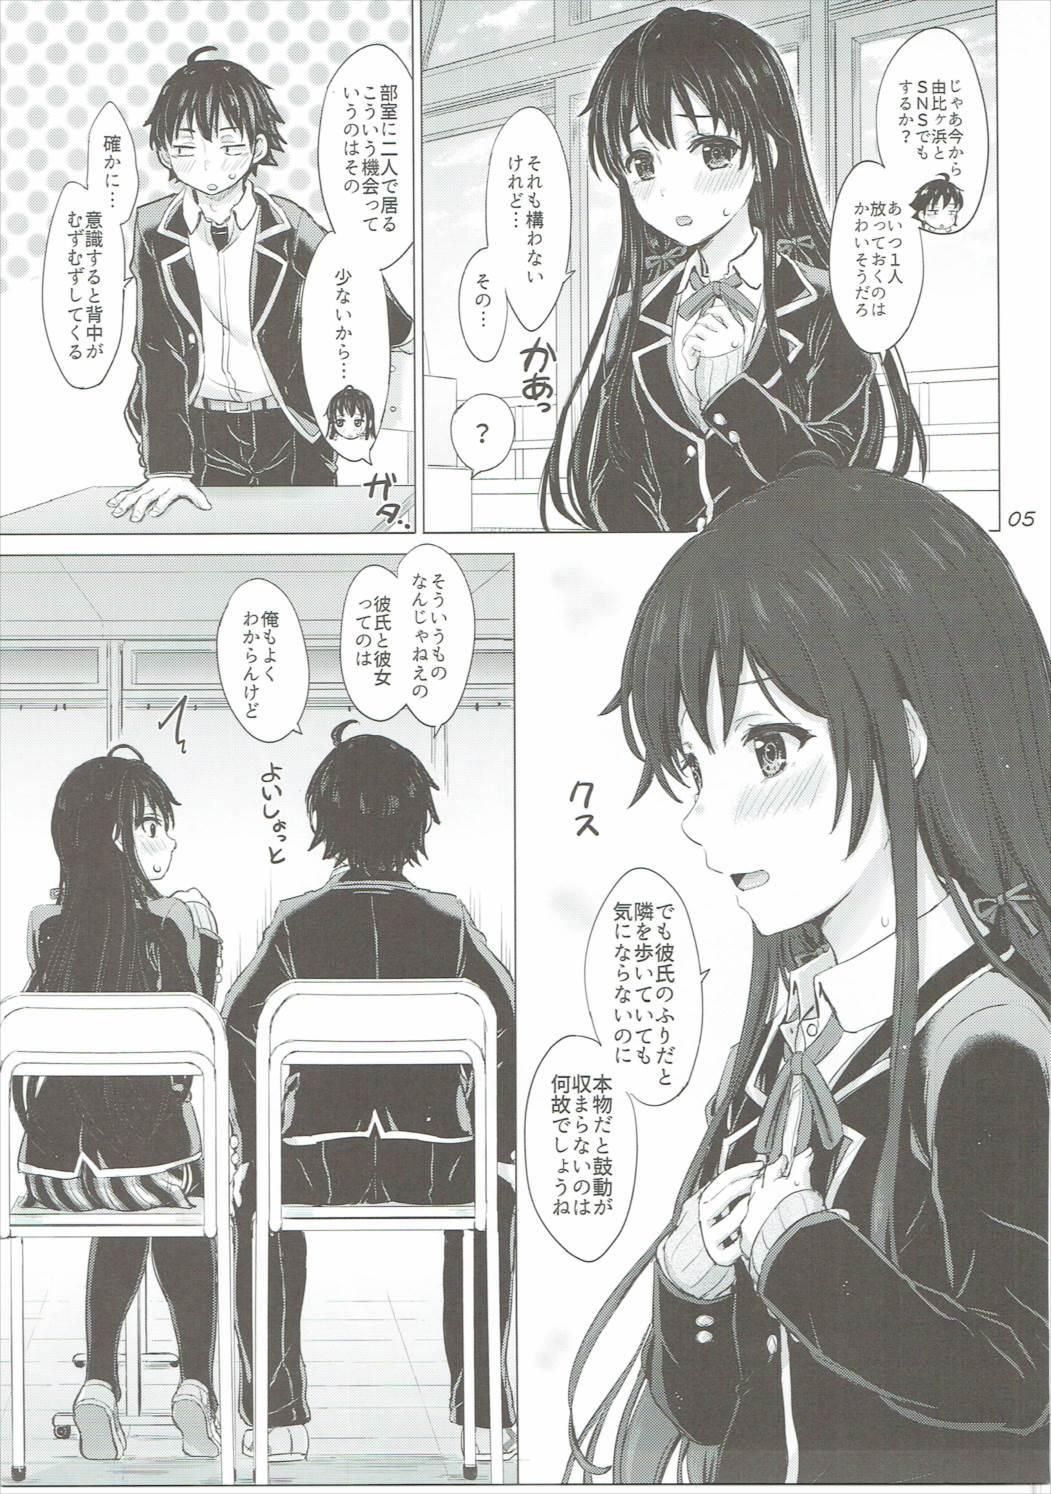 Desperate Yukinon Again. - Yahari ore no seishun love come wa machigatteiru Bunda - Page 4